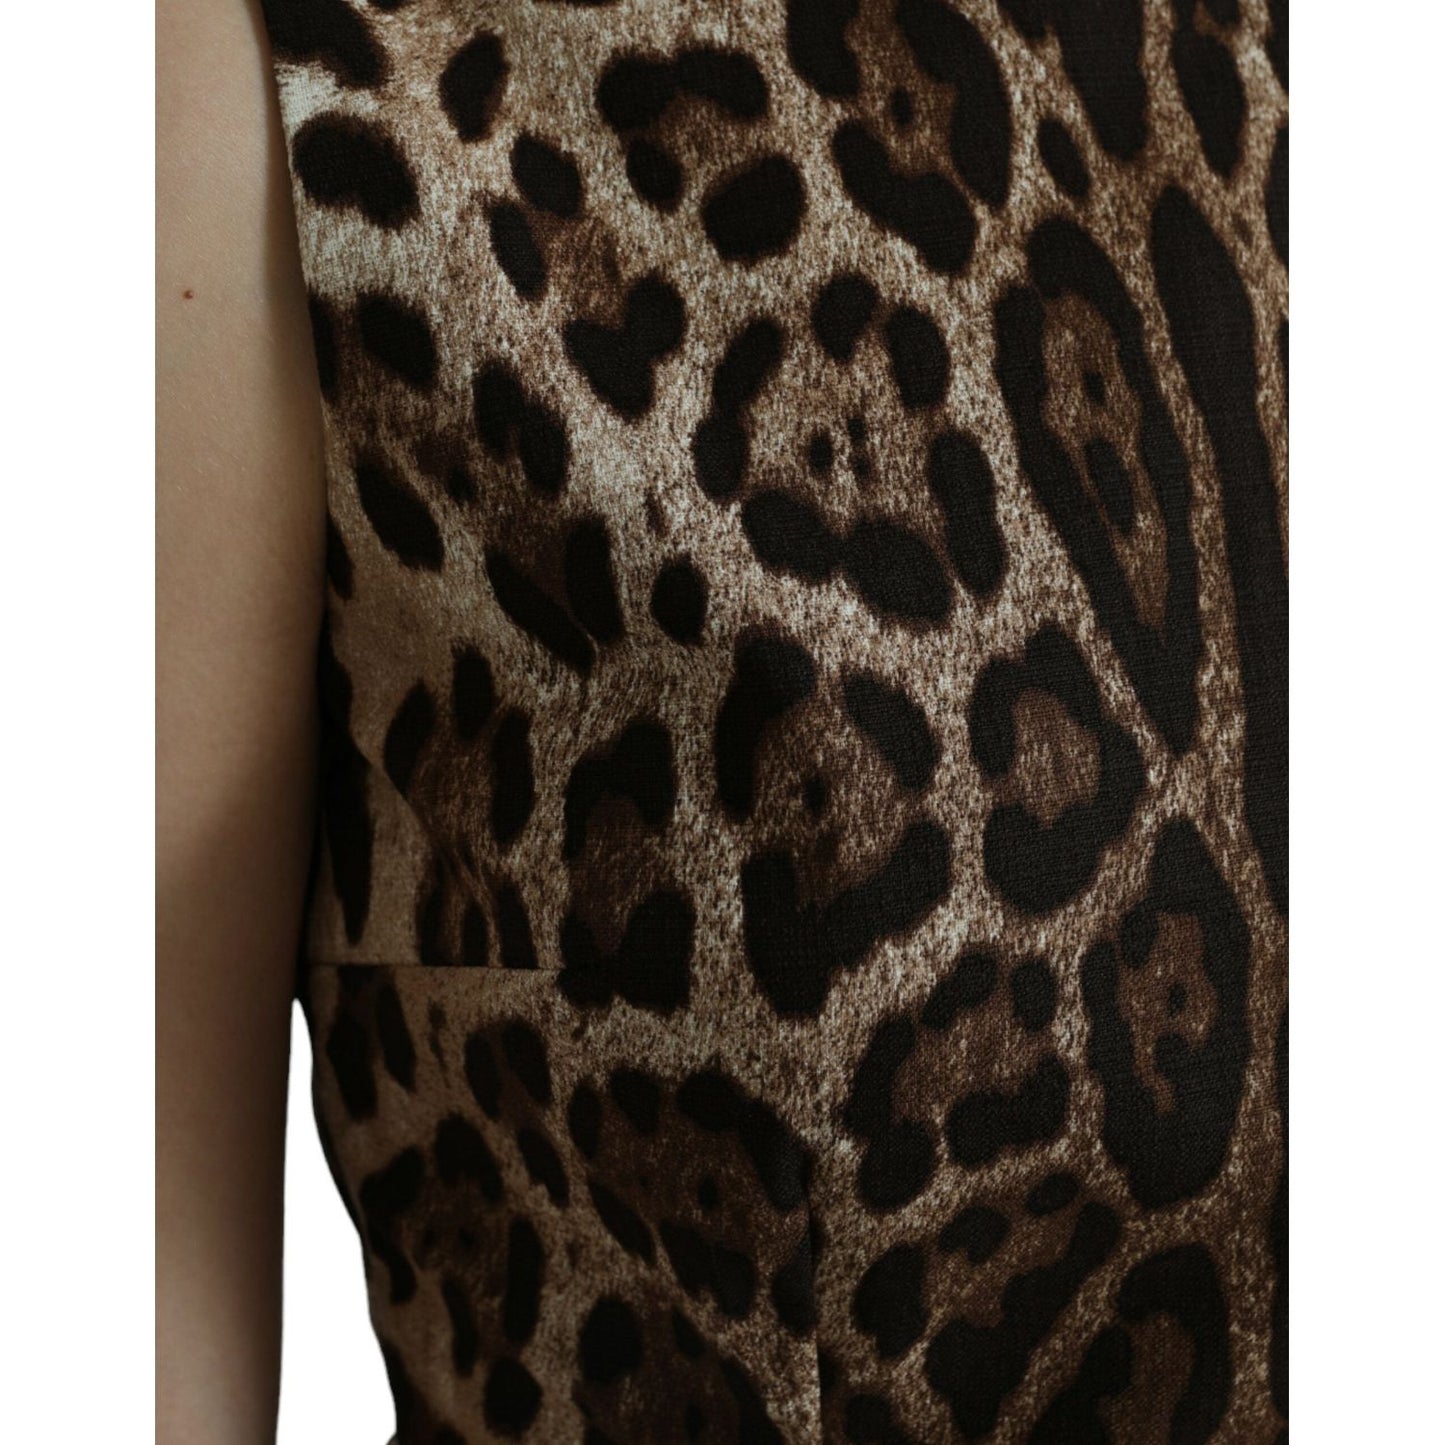 Dolce & Gabbana Sleek Leopard Print Silk-Blend Tank Top brown-leopard-cotton-sleeveless-tank-top